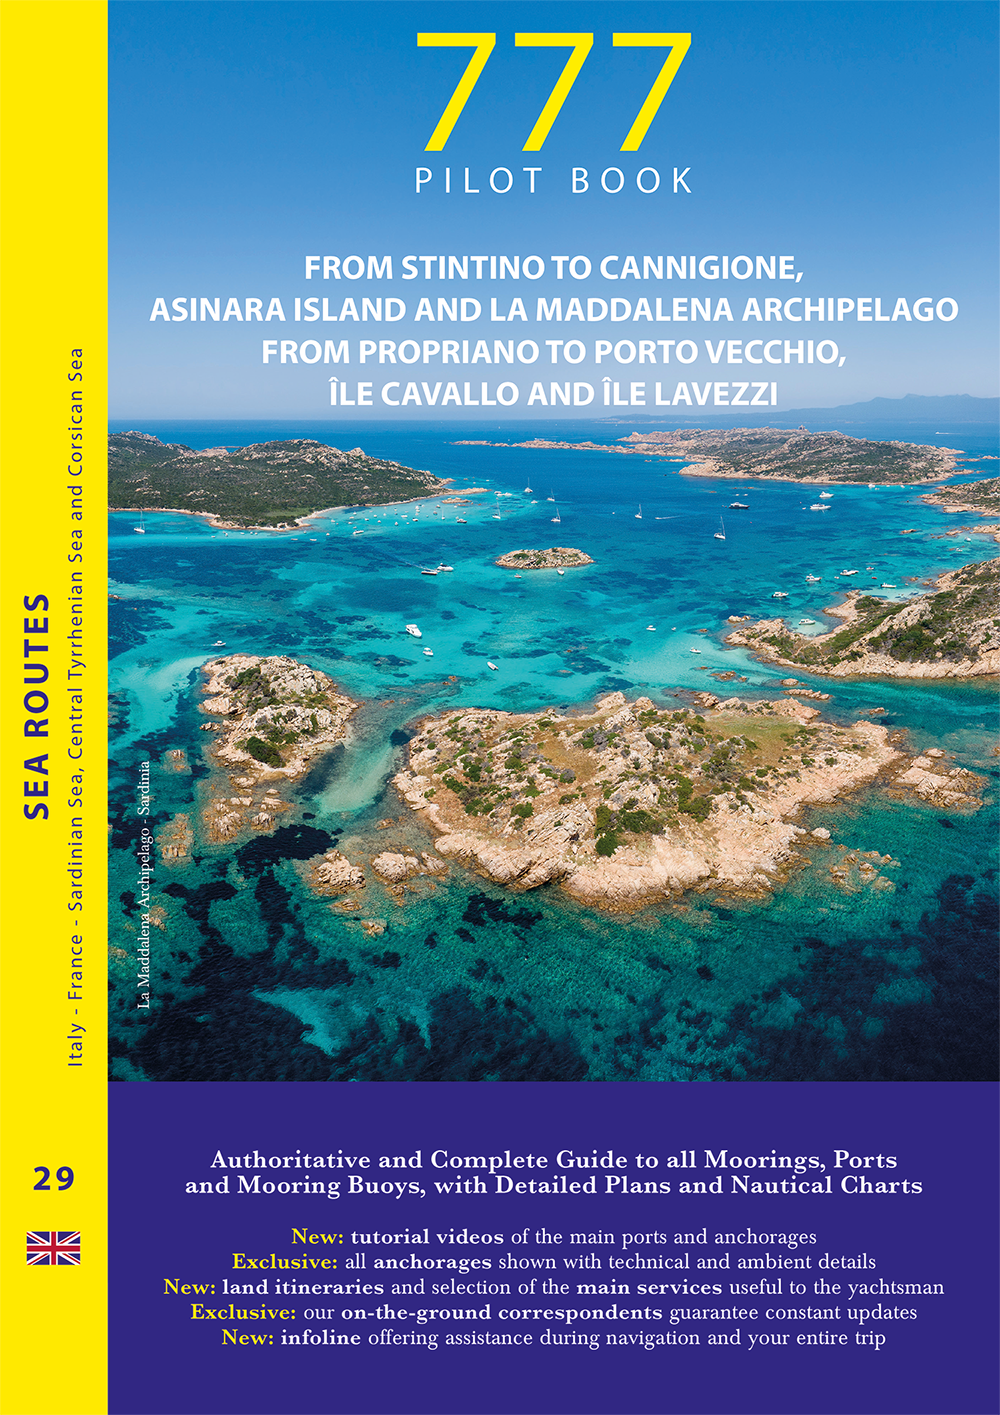 777 Pilot book Sardinia from Stintino to Cannigione and Corsica from Propriano to Porto Vecchio